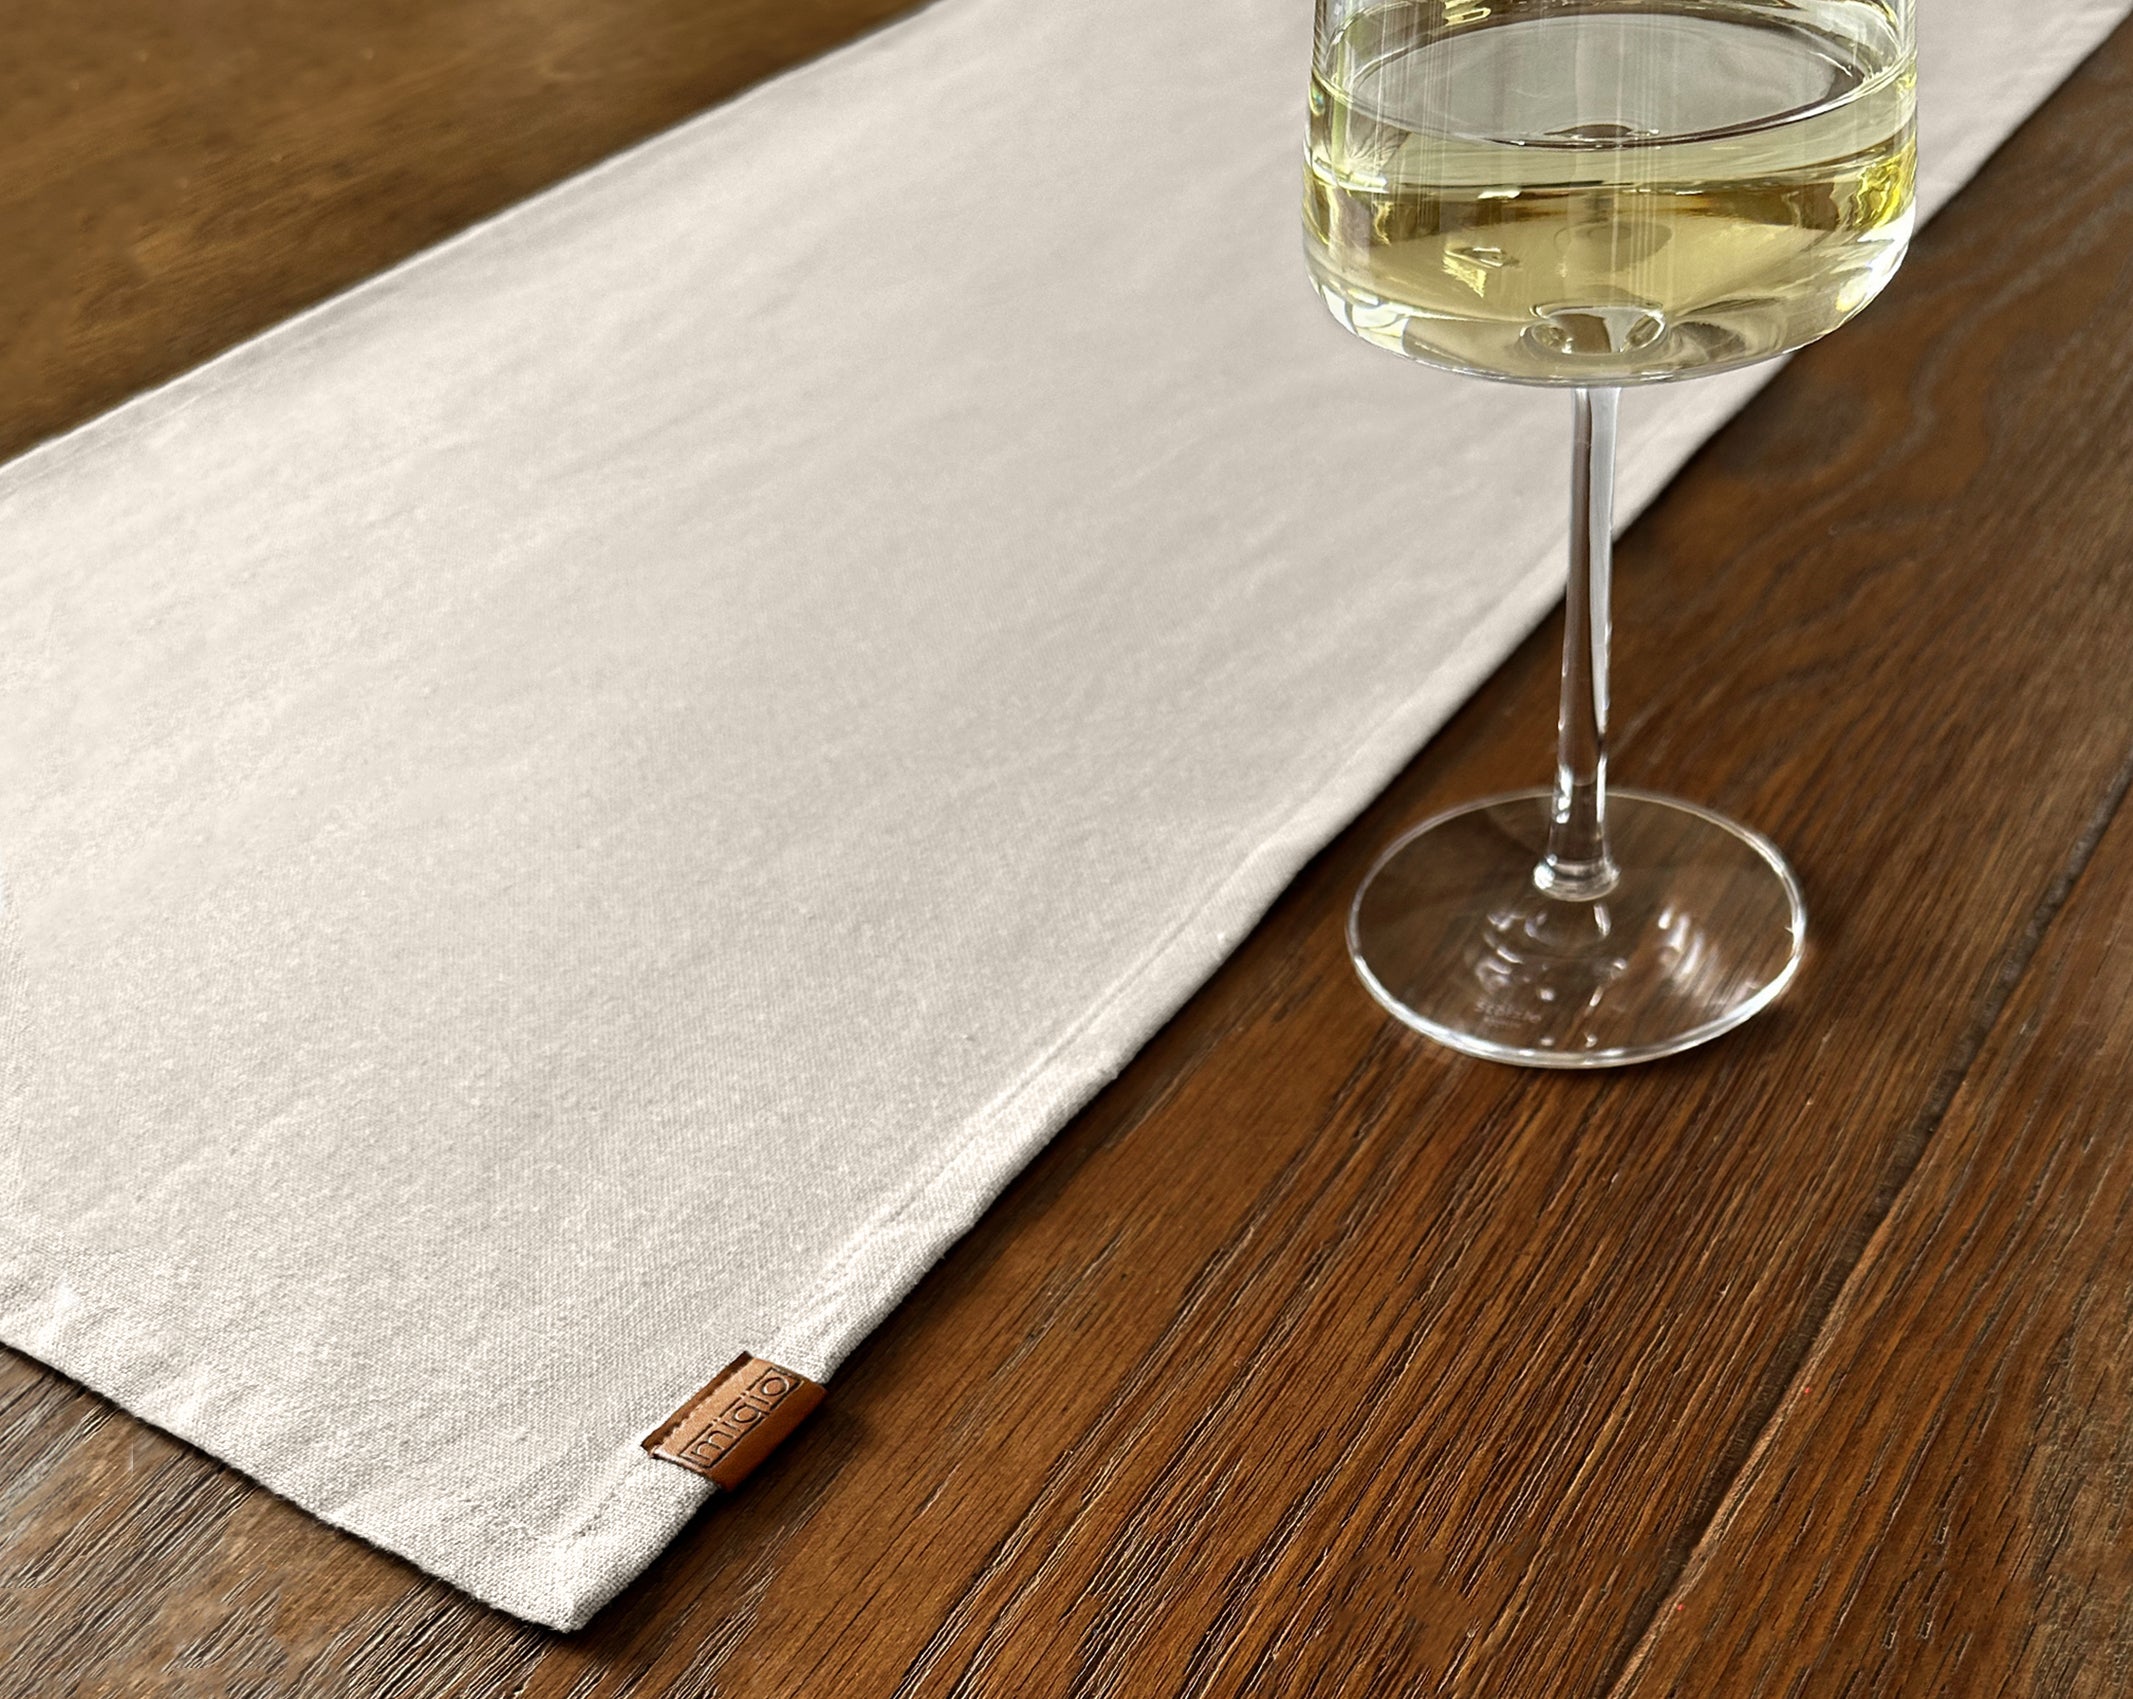 Tischset aus Filz: Platzset in grau, abwaschbar | MIQIO DESIGN – MIQIO®  Design